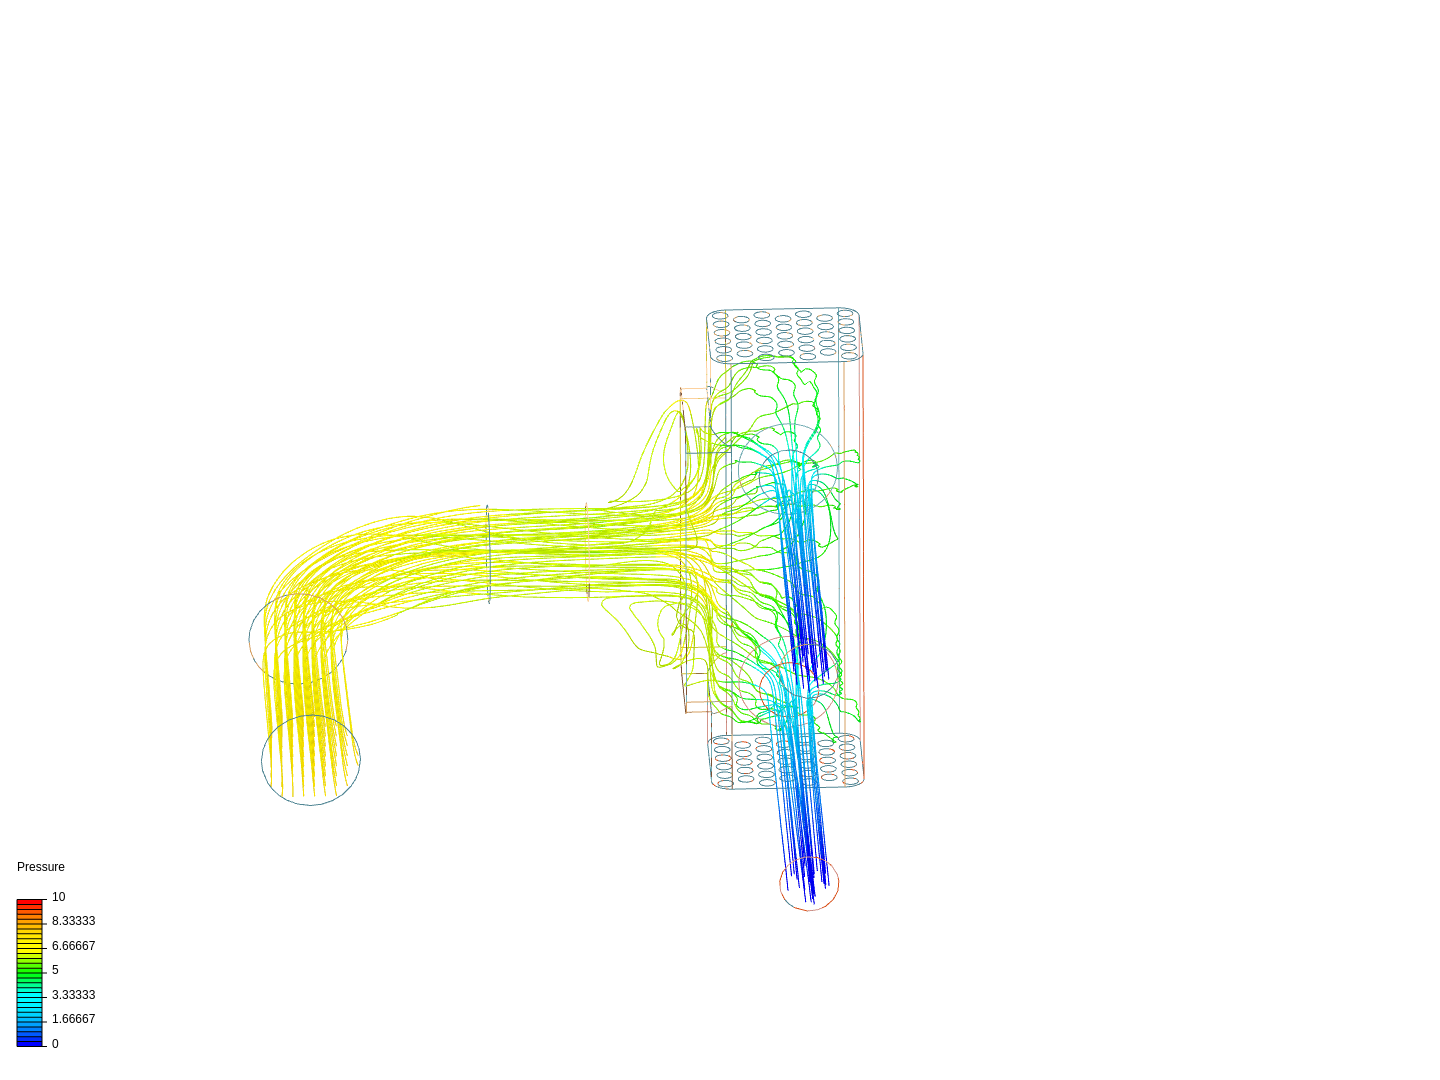 water flow_8 GPU-3 image